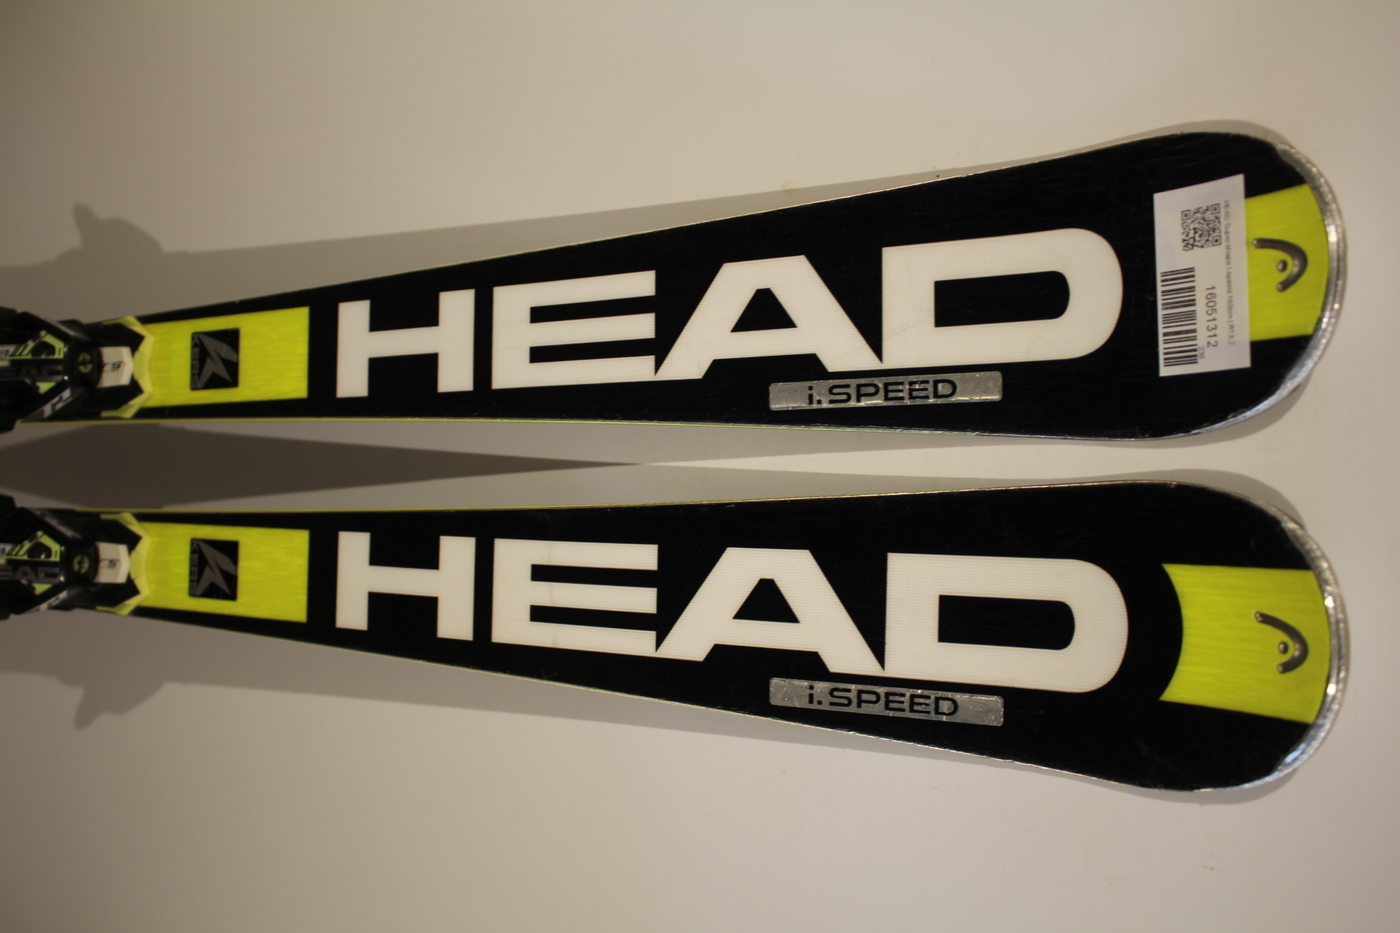 HEADスキー板 スーパーシェイプi-SPEED 163cm - スキー